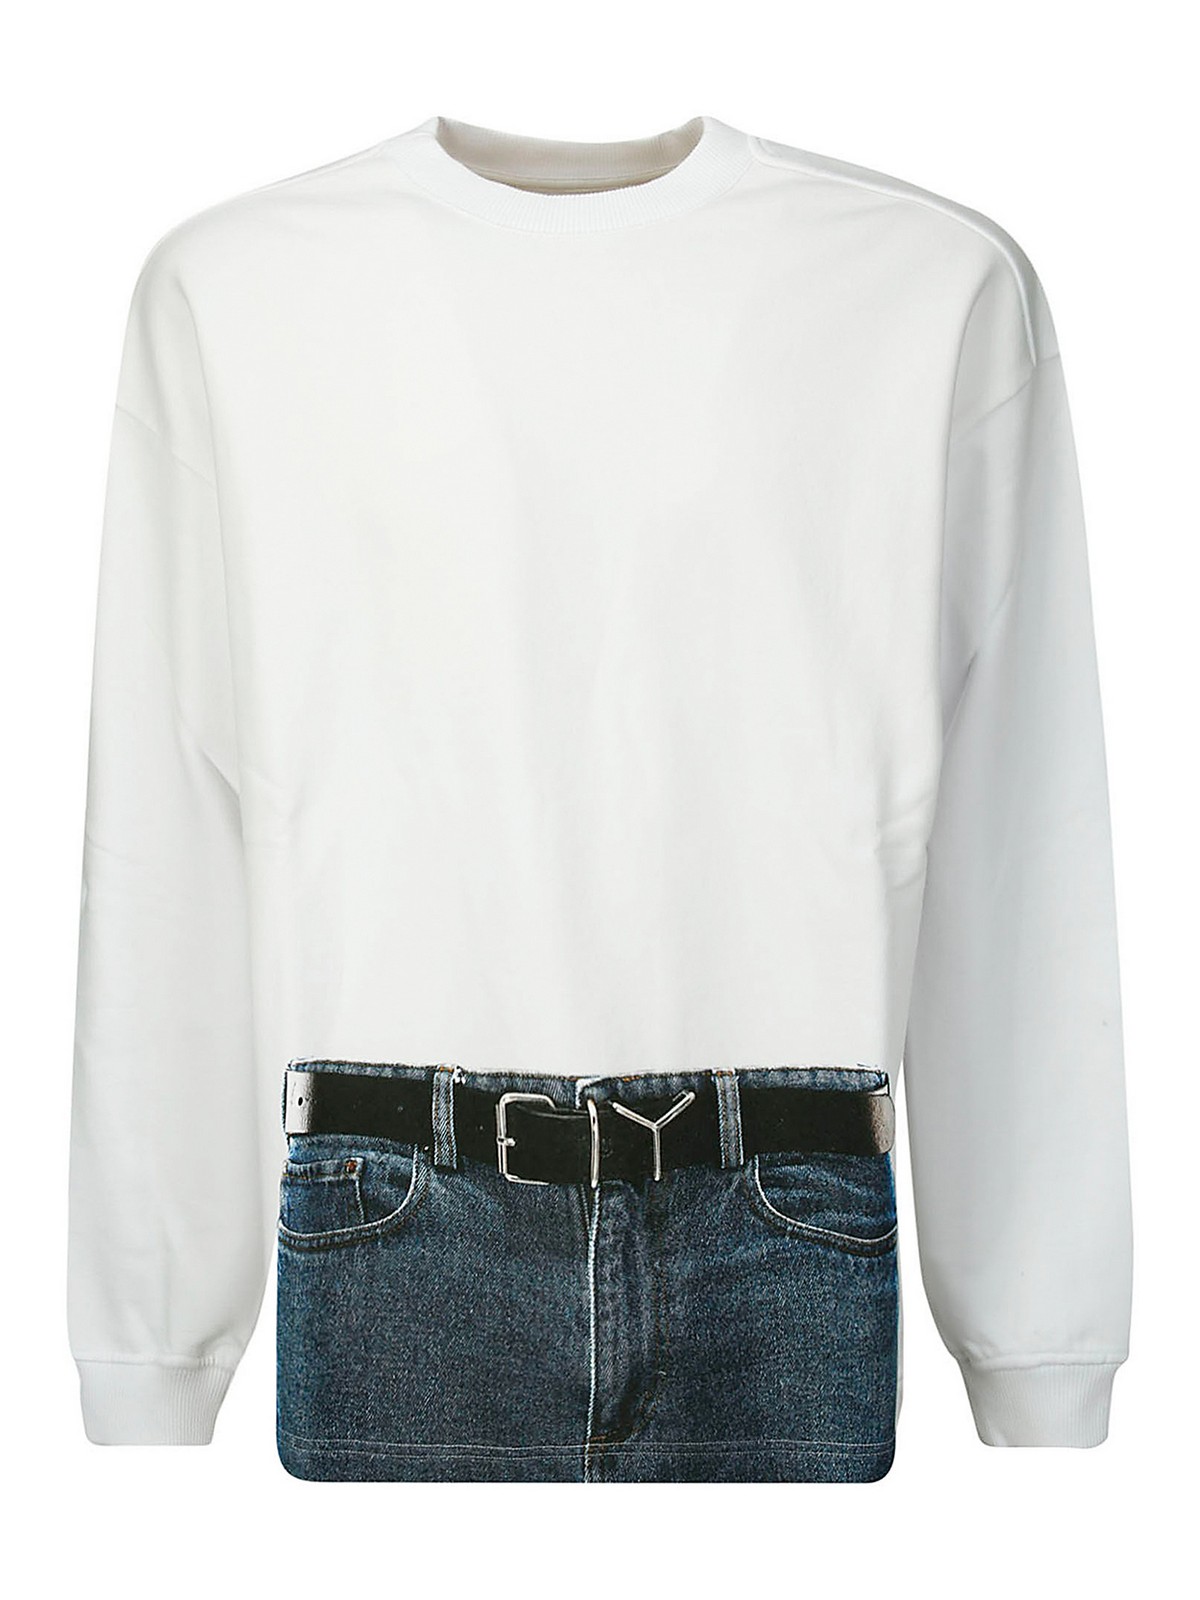 Y/PROJECT スウェットシャツ/セーター - 白-